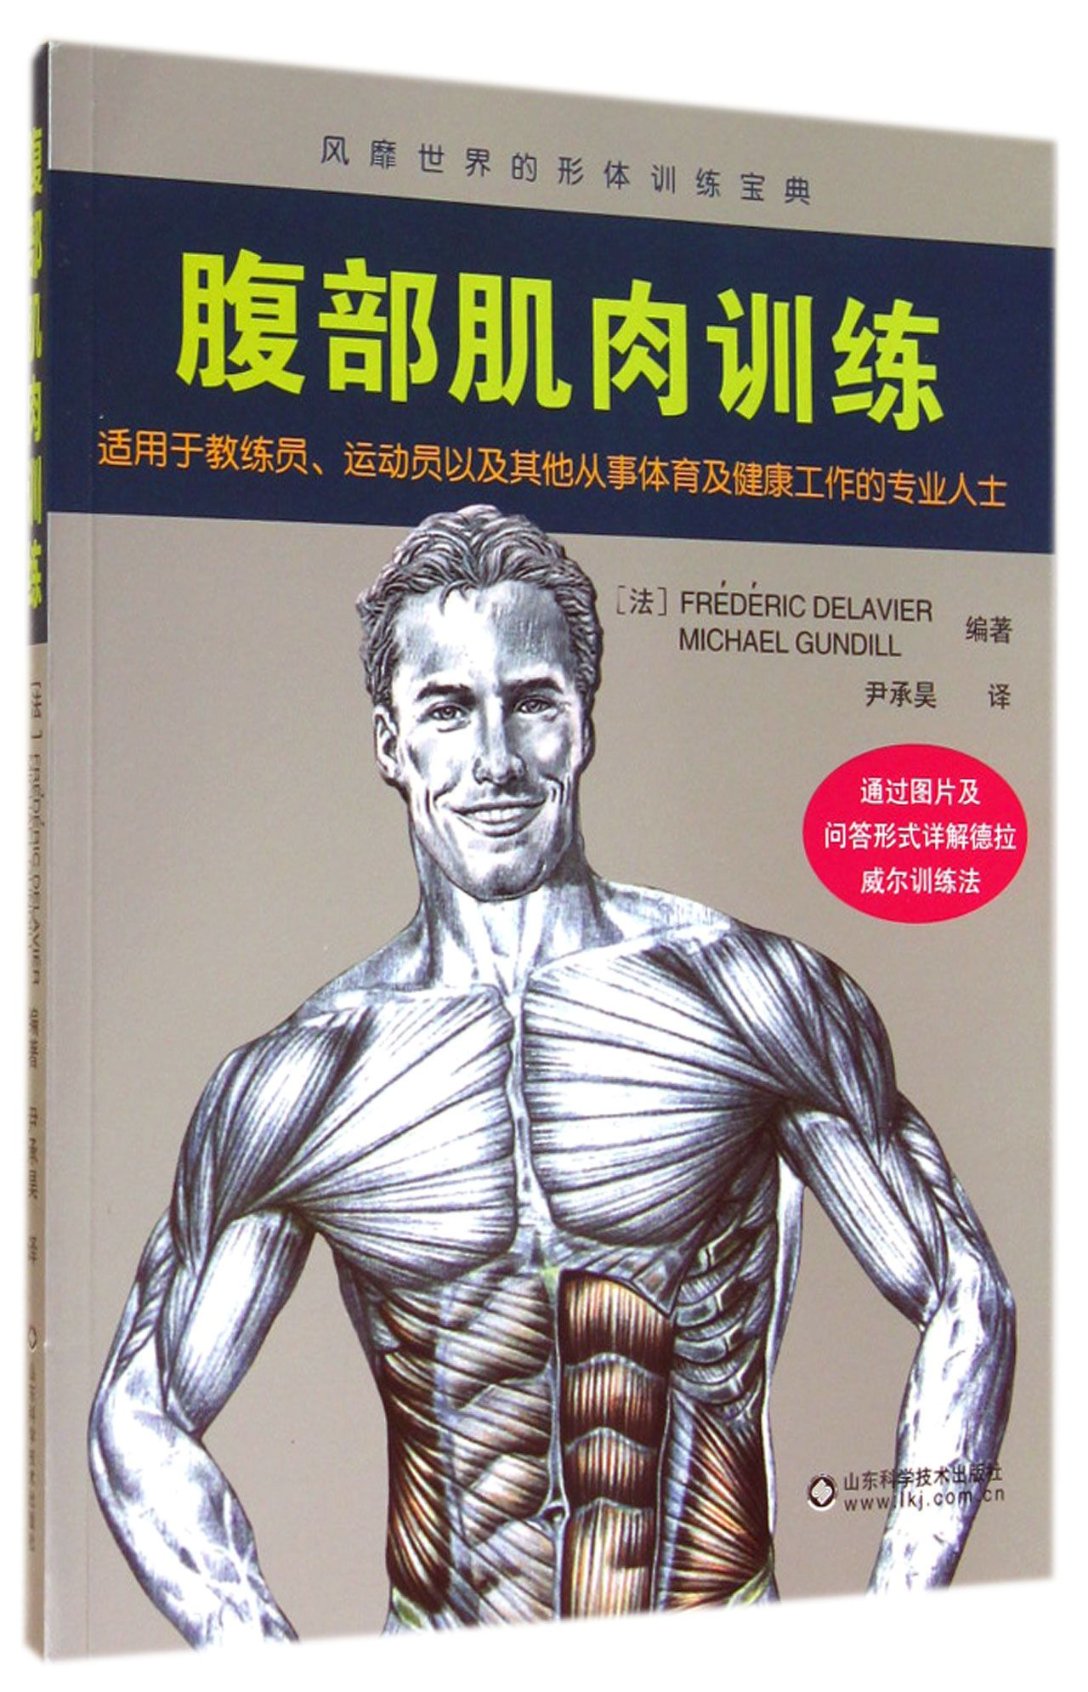 正版新书 腹部肌肉训练 (法)德拉威尔//甘地|译者:尹承昊 9787533175498 山东科技